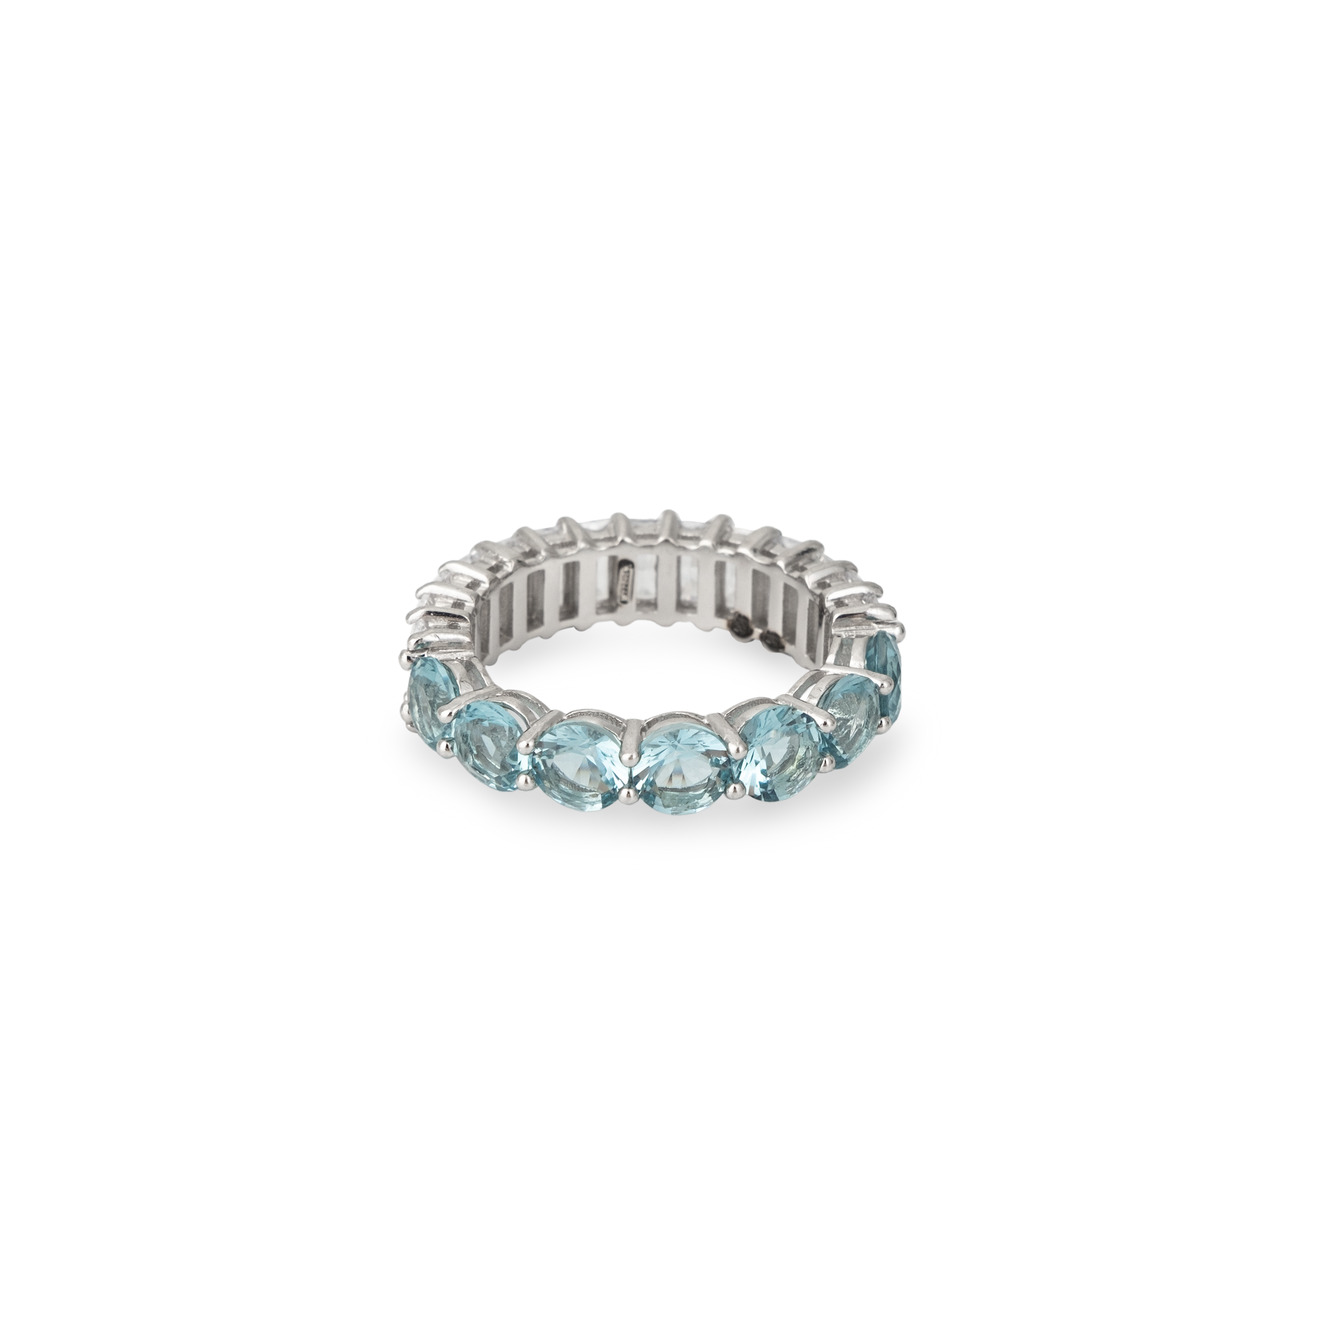 Holy Silver Кольцо-дорожка из серебра с голубыми и белыми кристаллами разной формы